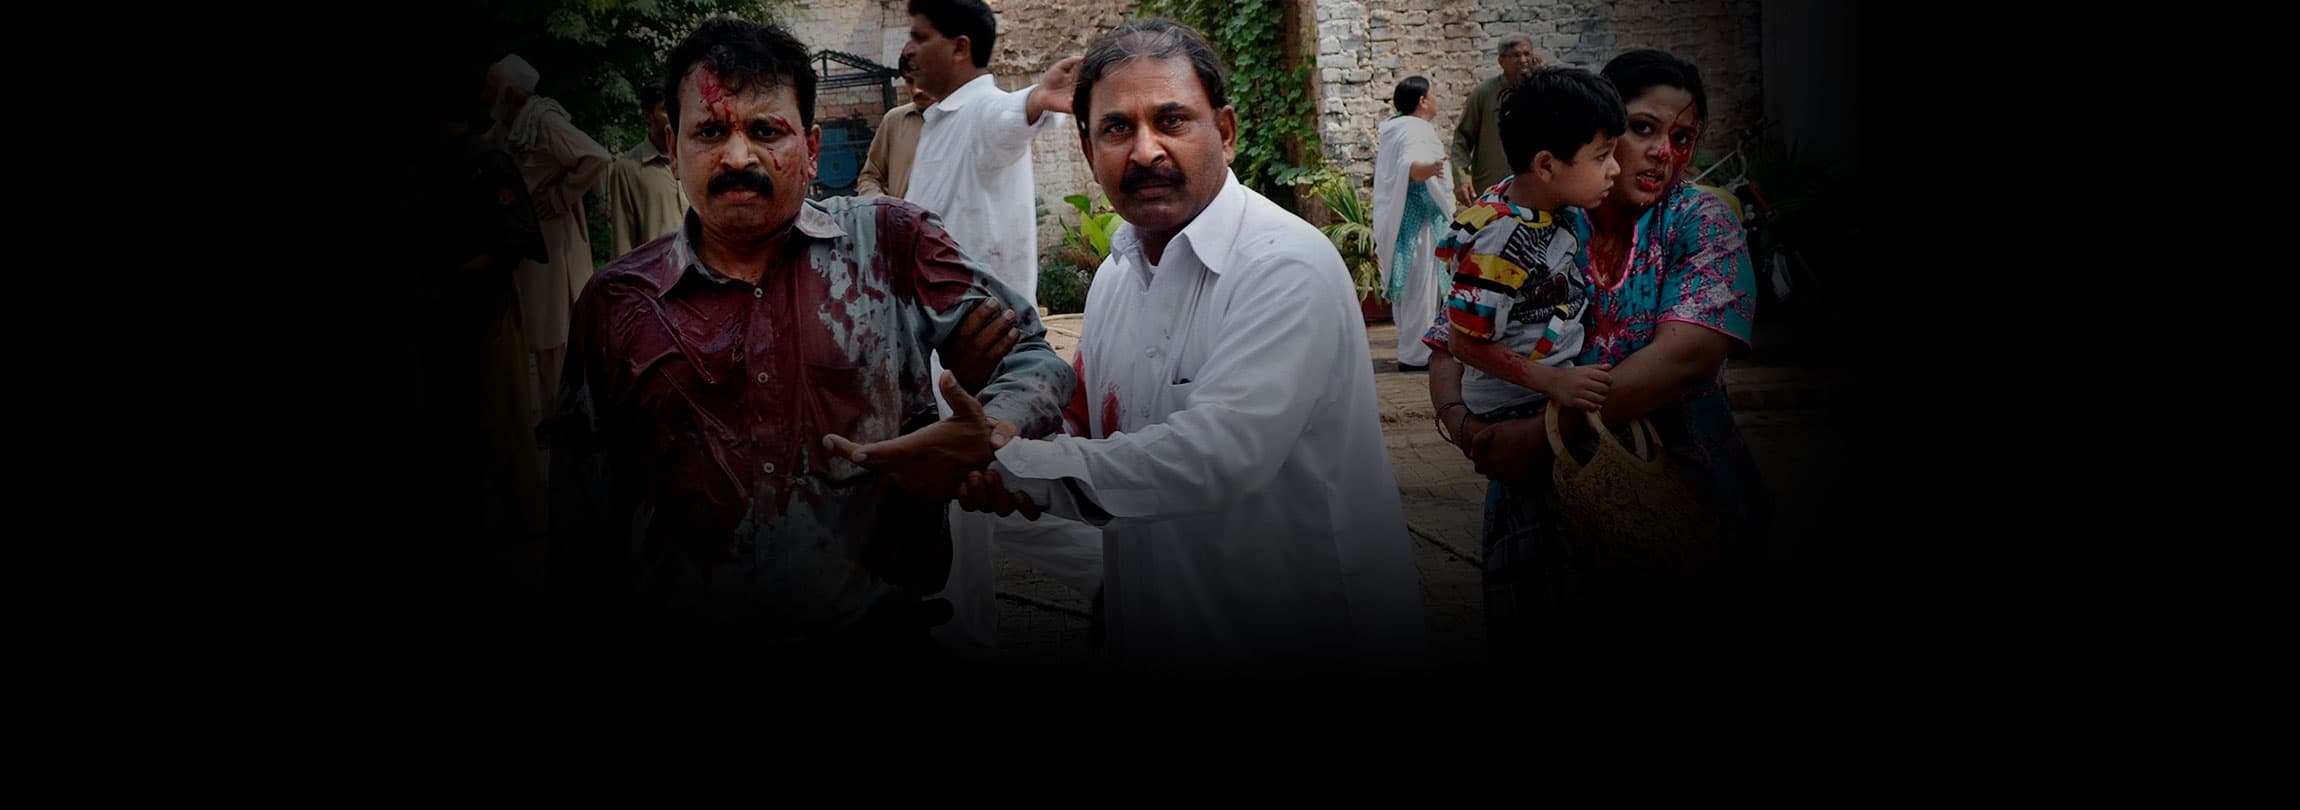 Atentado suicida mata 80 cristãos no Paquistão